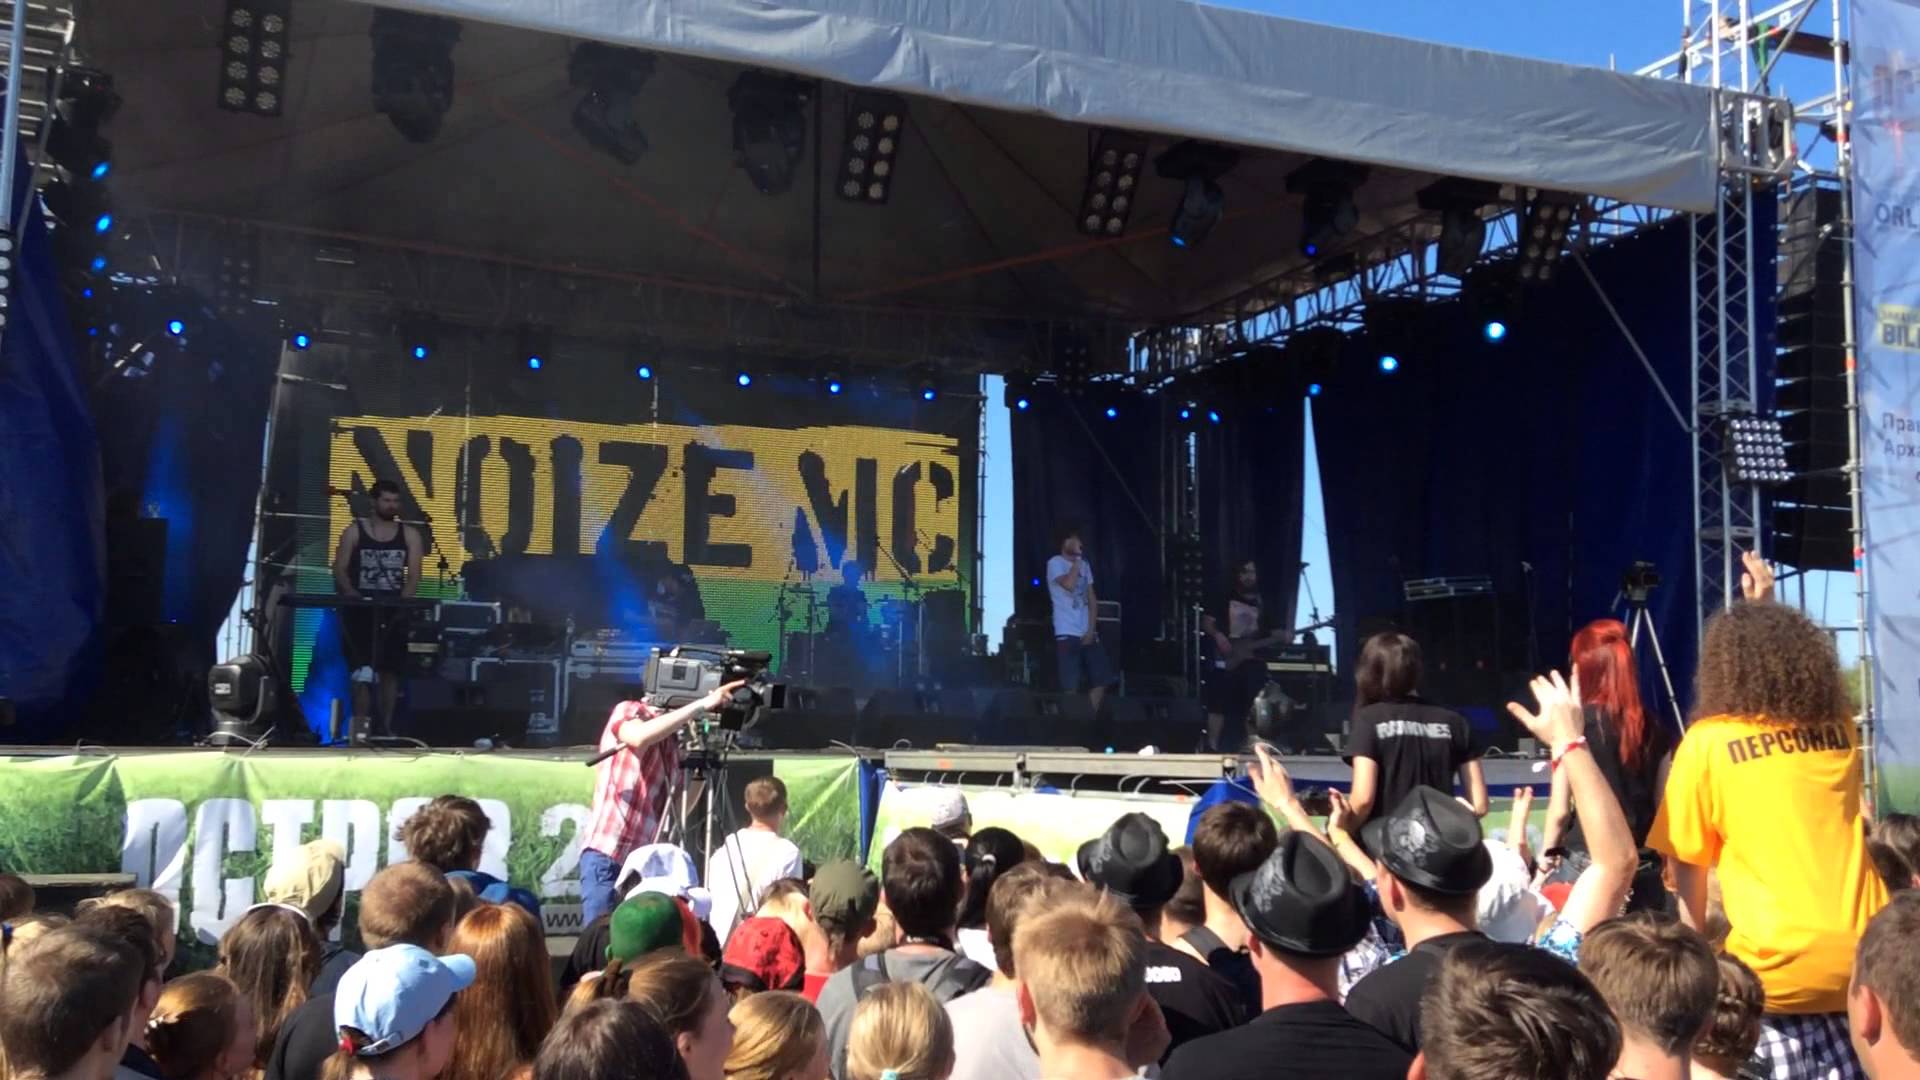 Noize MC - Последняя Песня Остров 2014